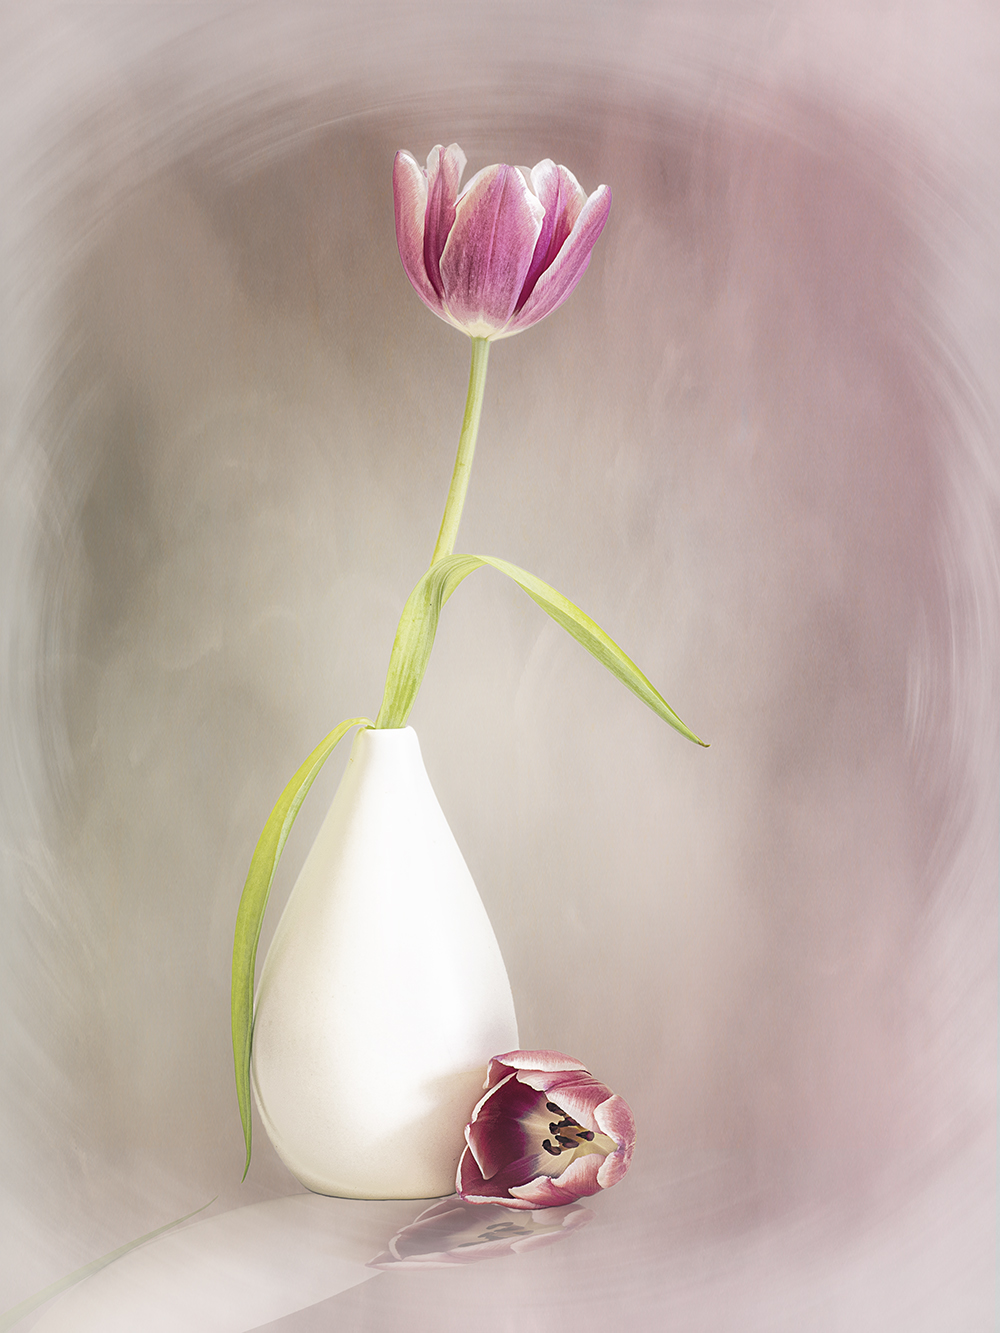 Pink Tulip by Jenni Cheesman